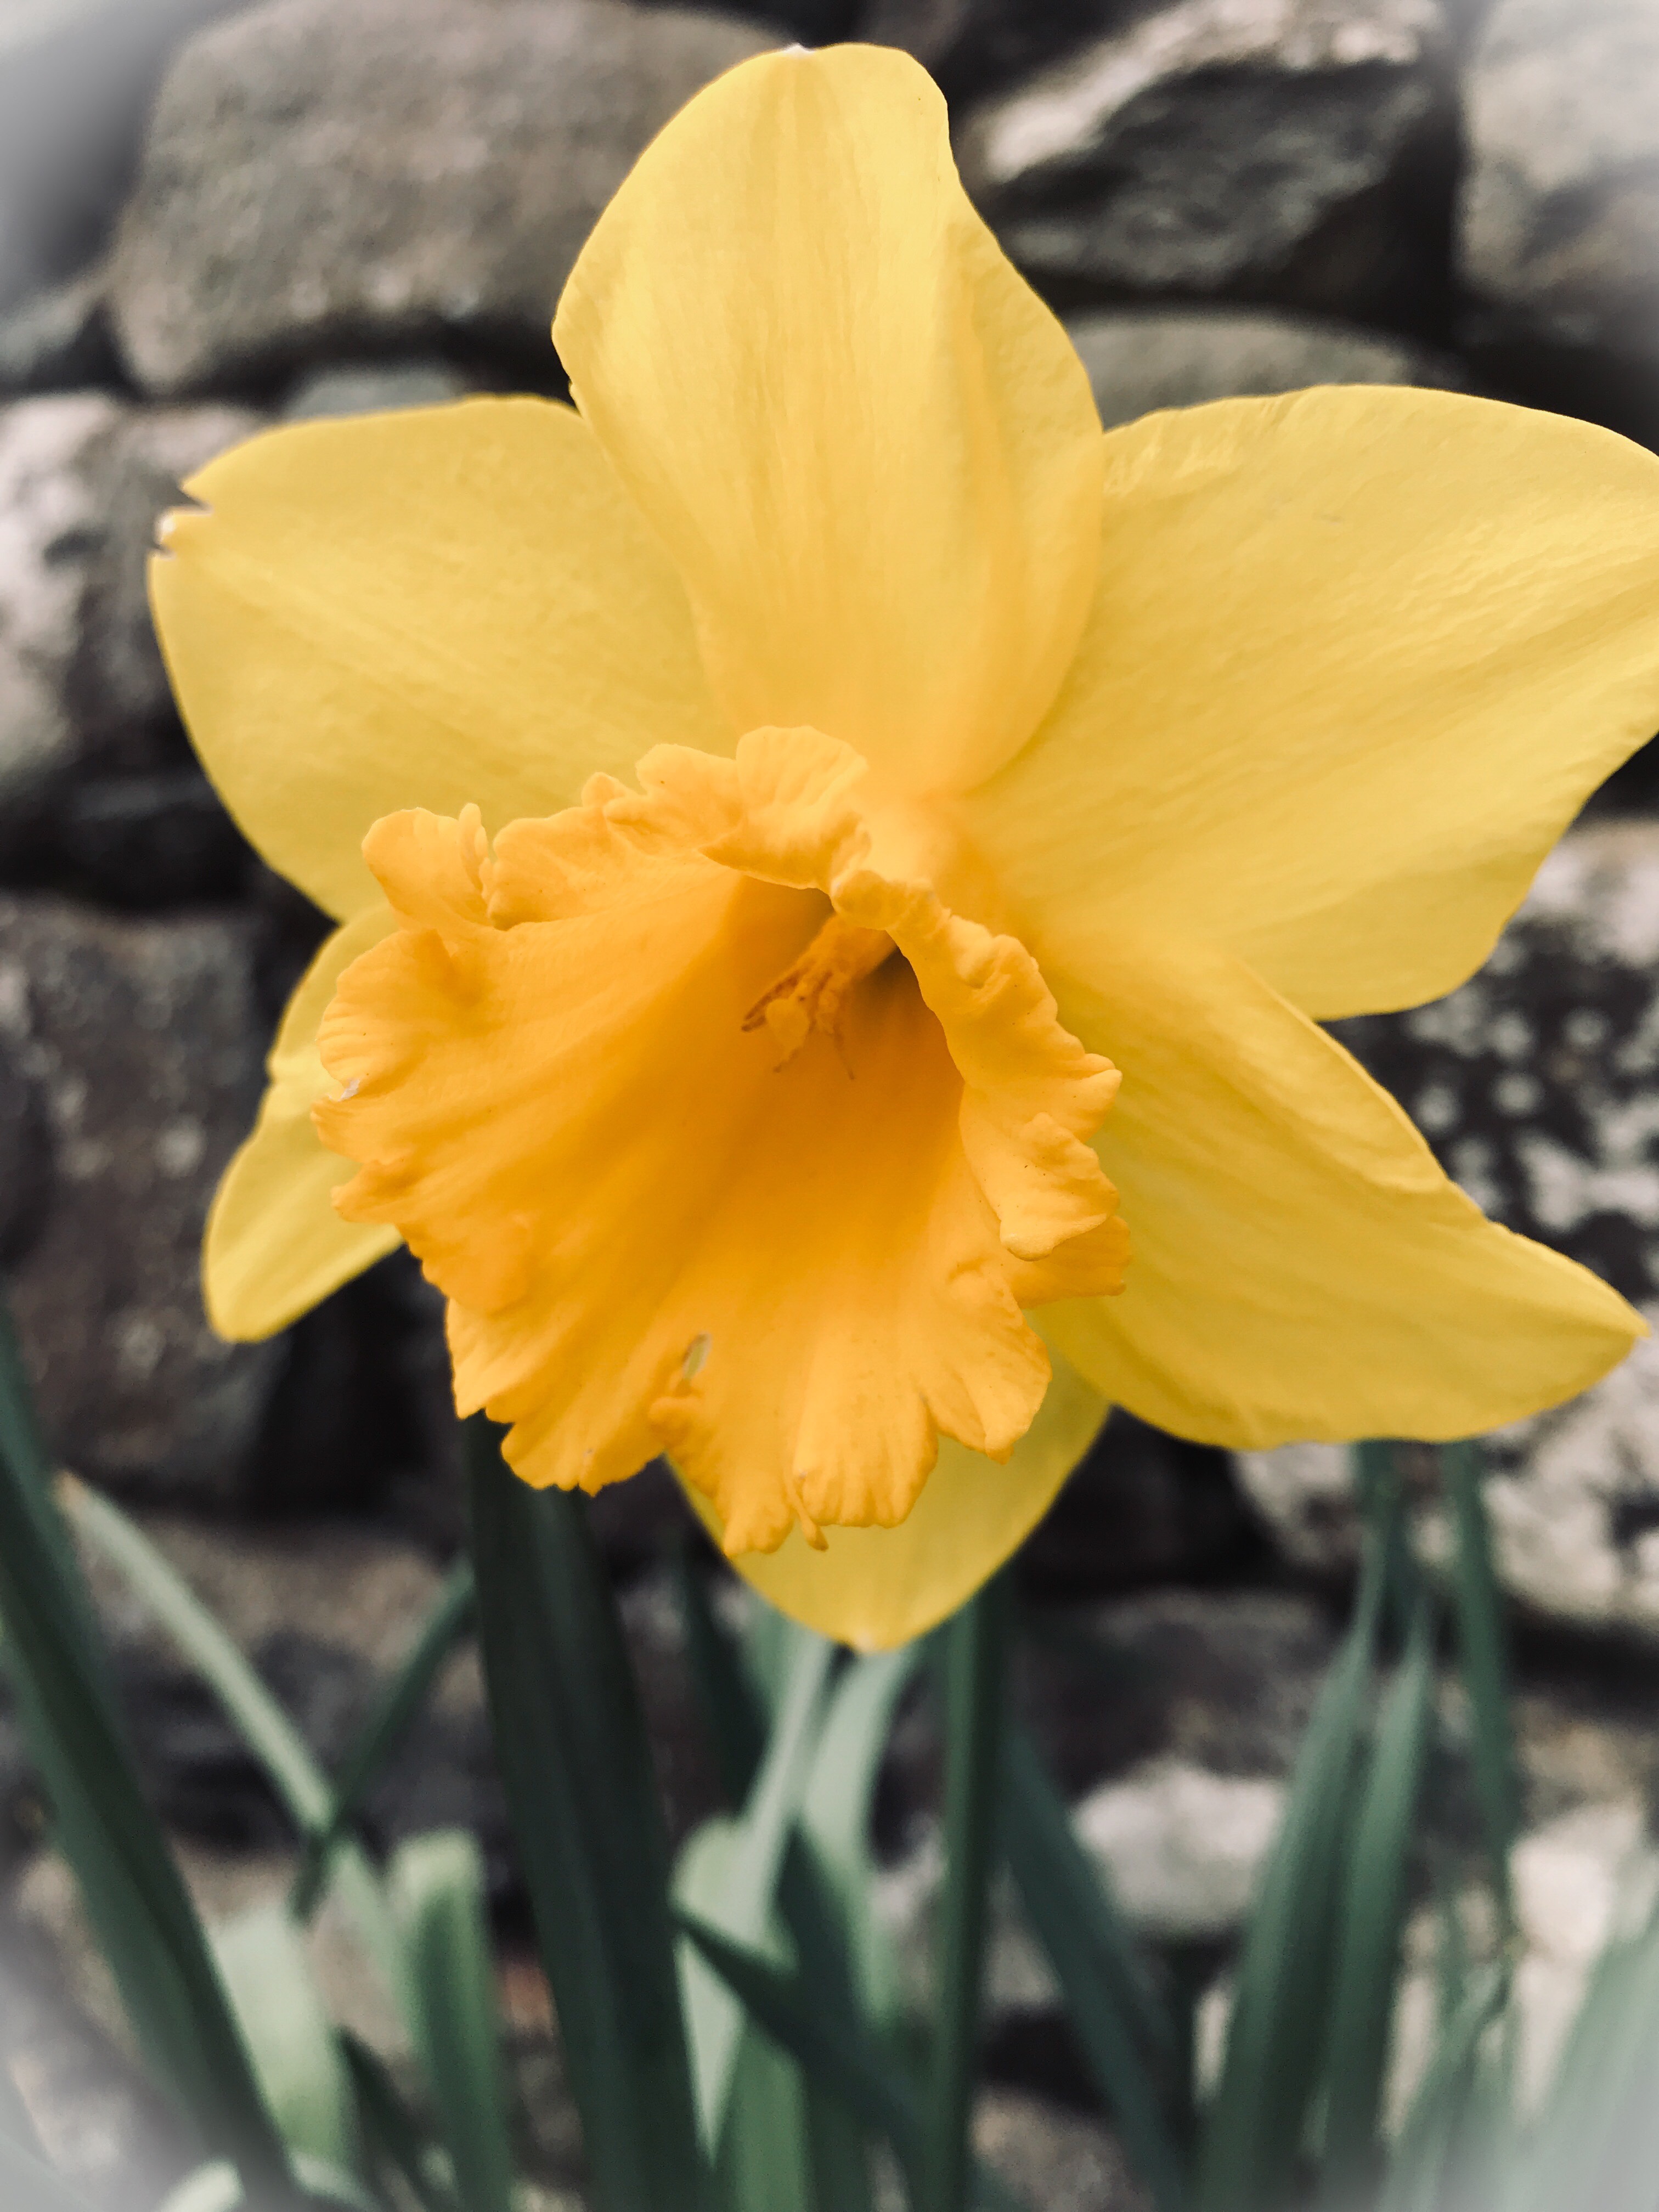 #MySundaySnapshot - Dazzling Daffodils 13/52 (2019)